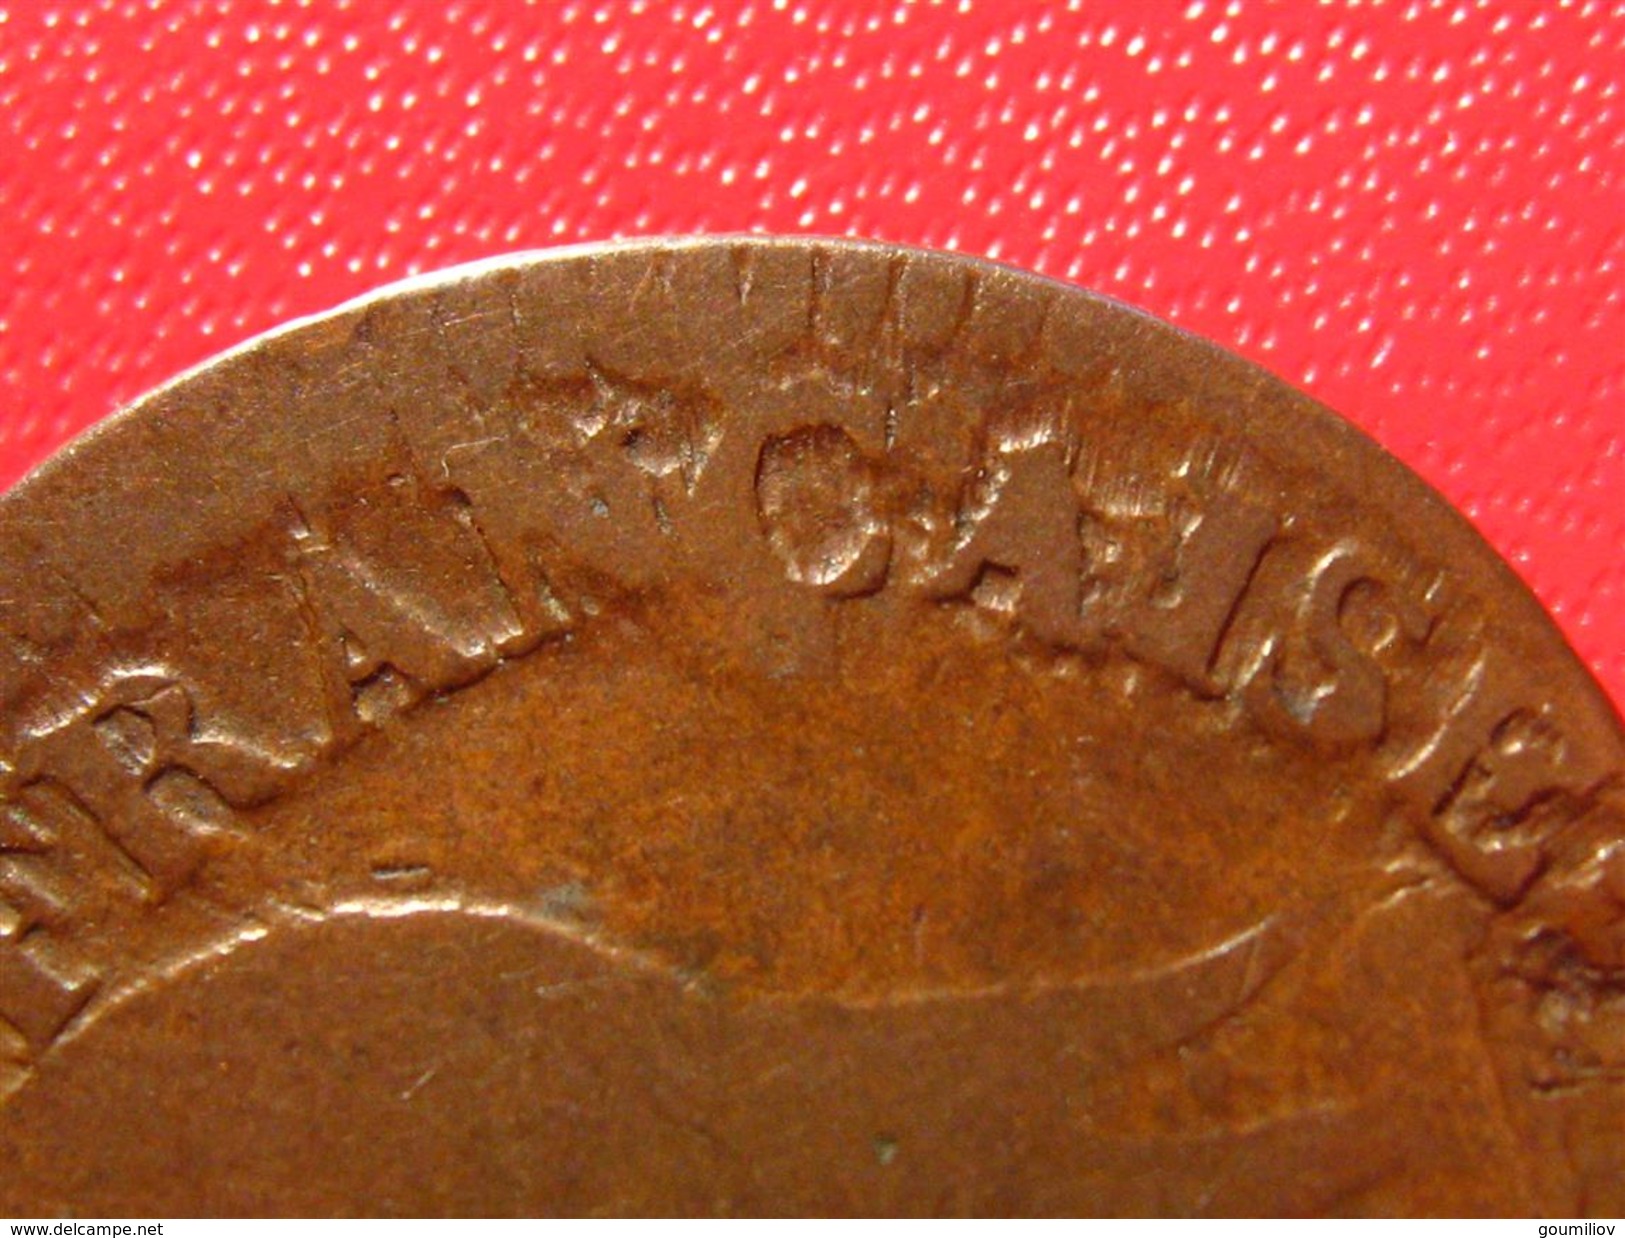 RARISSIME DUO - 2 exemplaires issus de la même paire de coins - Cinq 5 centimes L'an 7 sur 5 D Lyon 4512